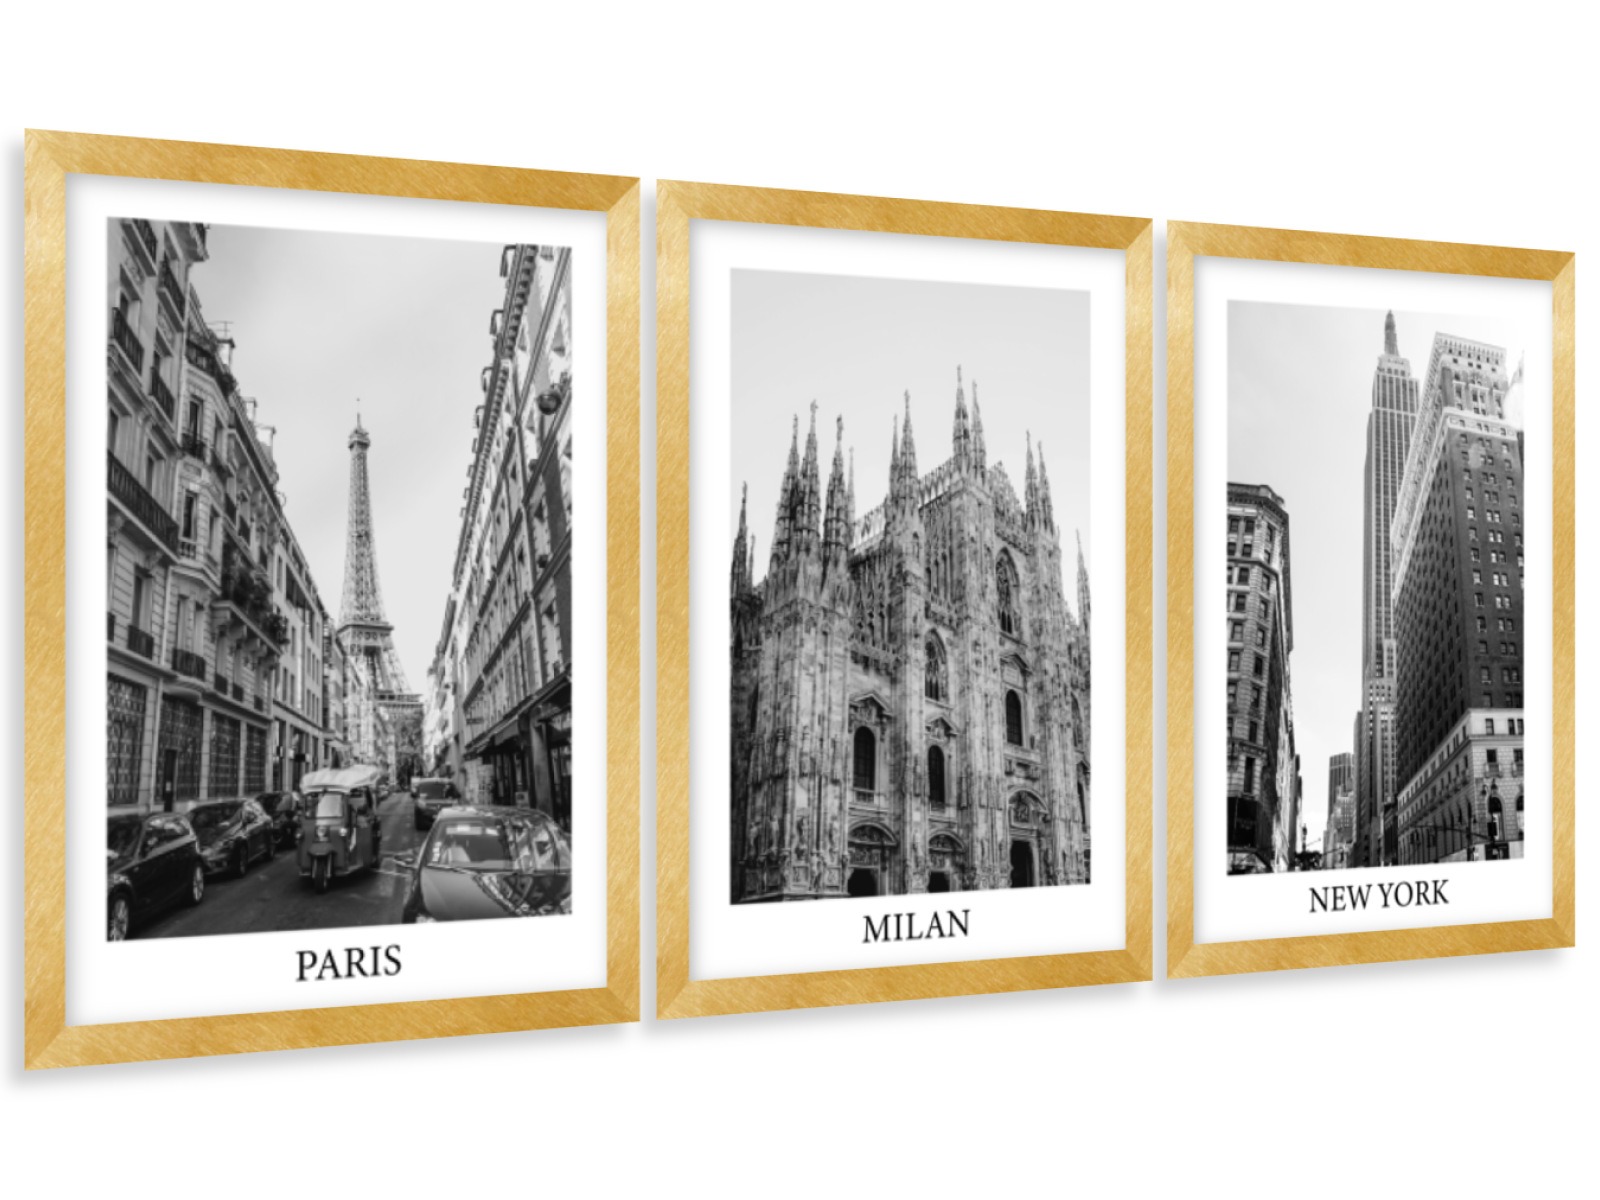 Gario Sada plagátov Paris, Milan, New York - 3 dielna Farba rámu: Zlatá, Veľkosť: 99 x 45 cm